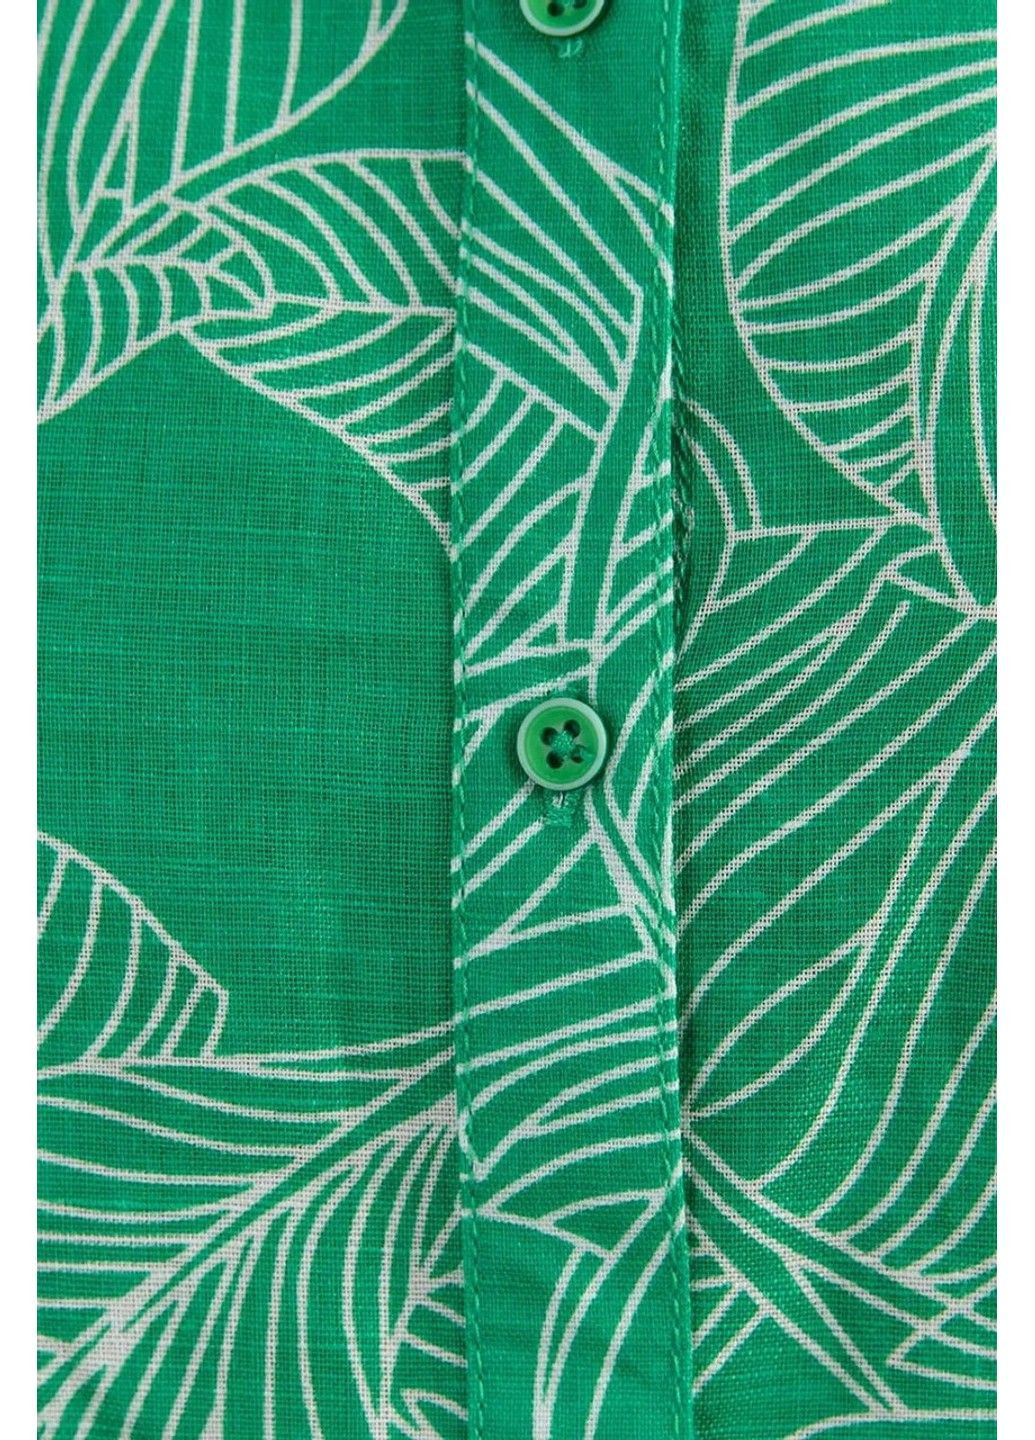 Зеленая летняя блузка s19-12047-500 Finn Flare